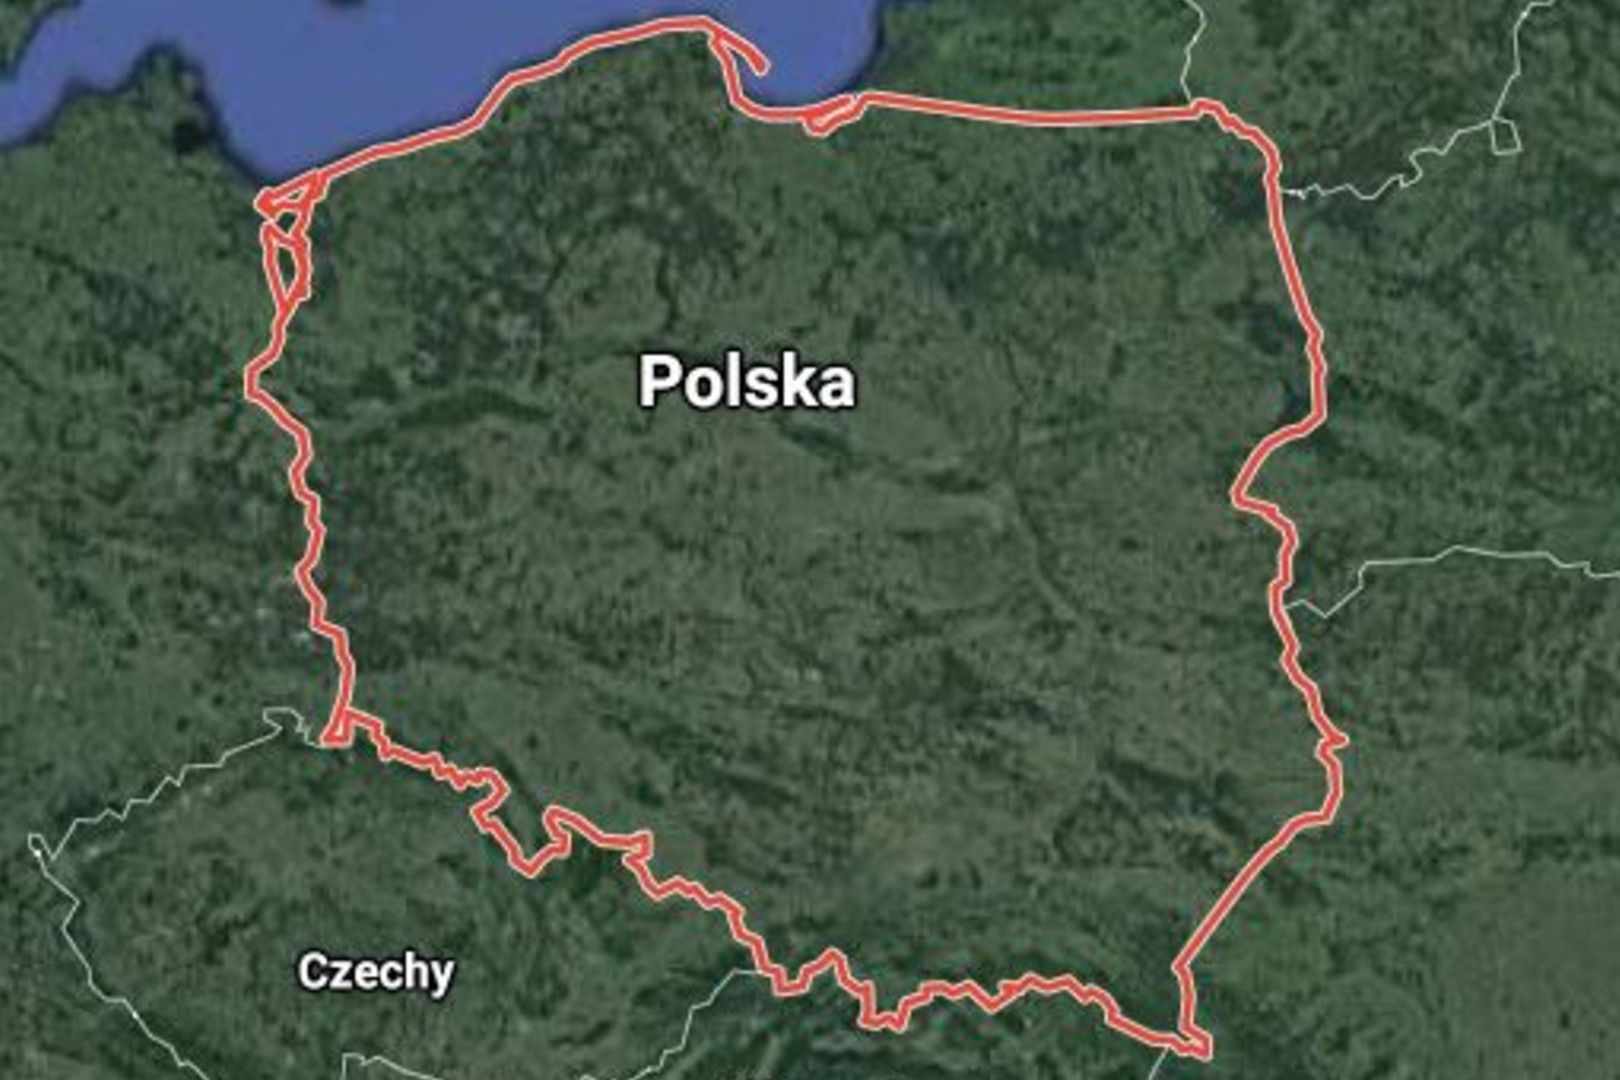 Paszporty szczepionkowe nie będą testowane w Polsce